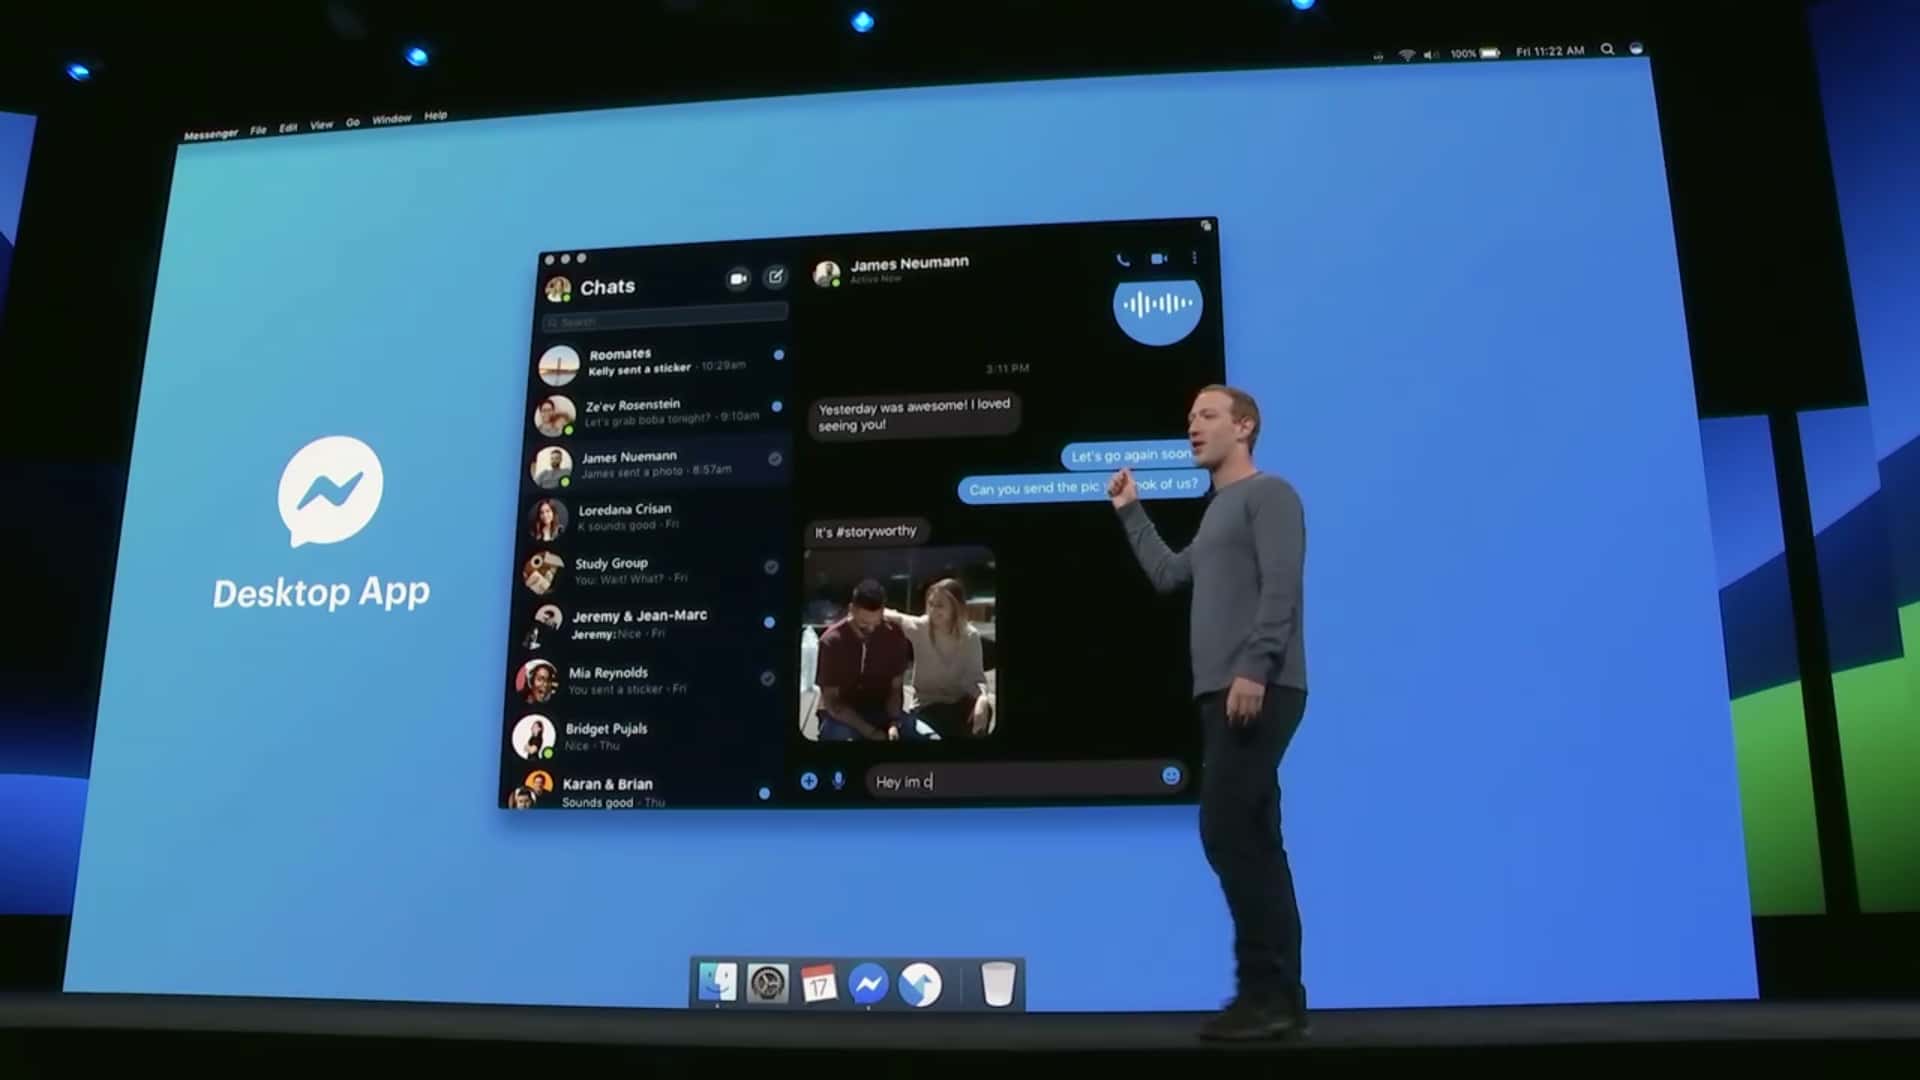 Facebook เตรียมปรับปรุงดีไซน์ครั้งใหญ่ สะอาดขึ้น เร็วขึ้น พร้อมออก Messenger เวอร์ชัน Desktop ทำงานได้ครบทุกฟีเจอร์ 9